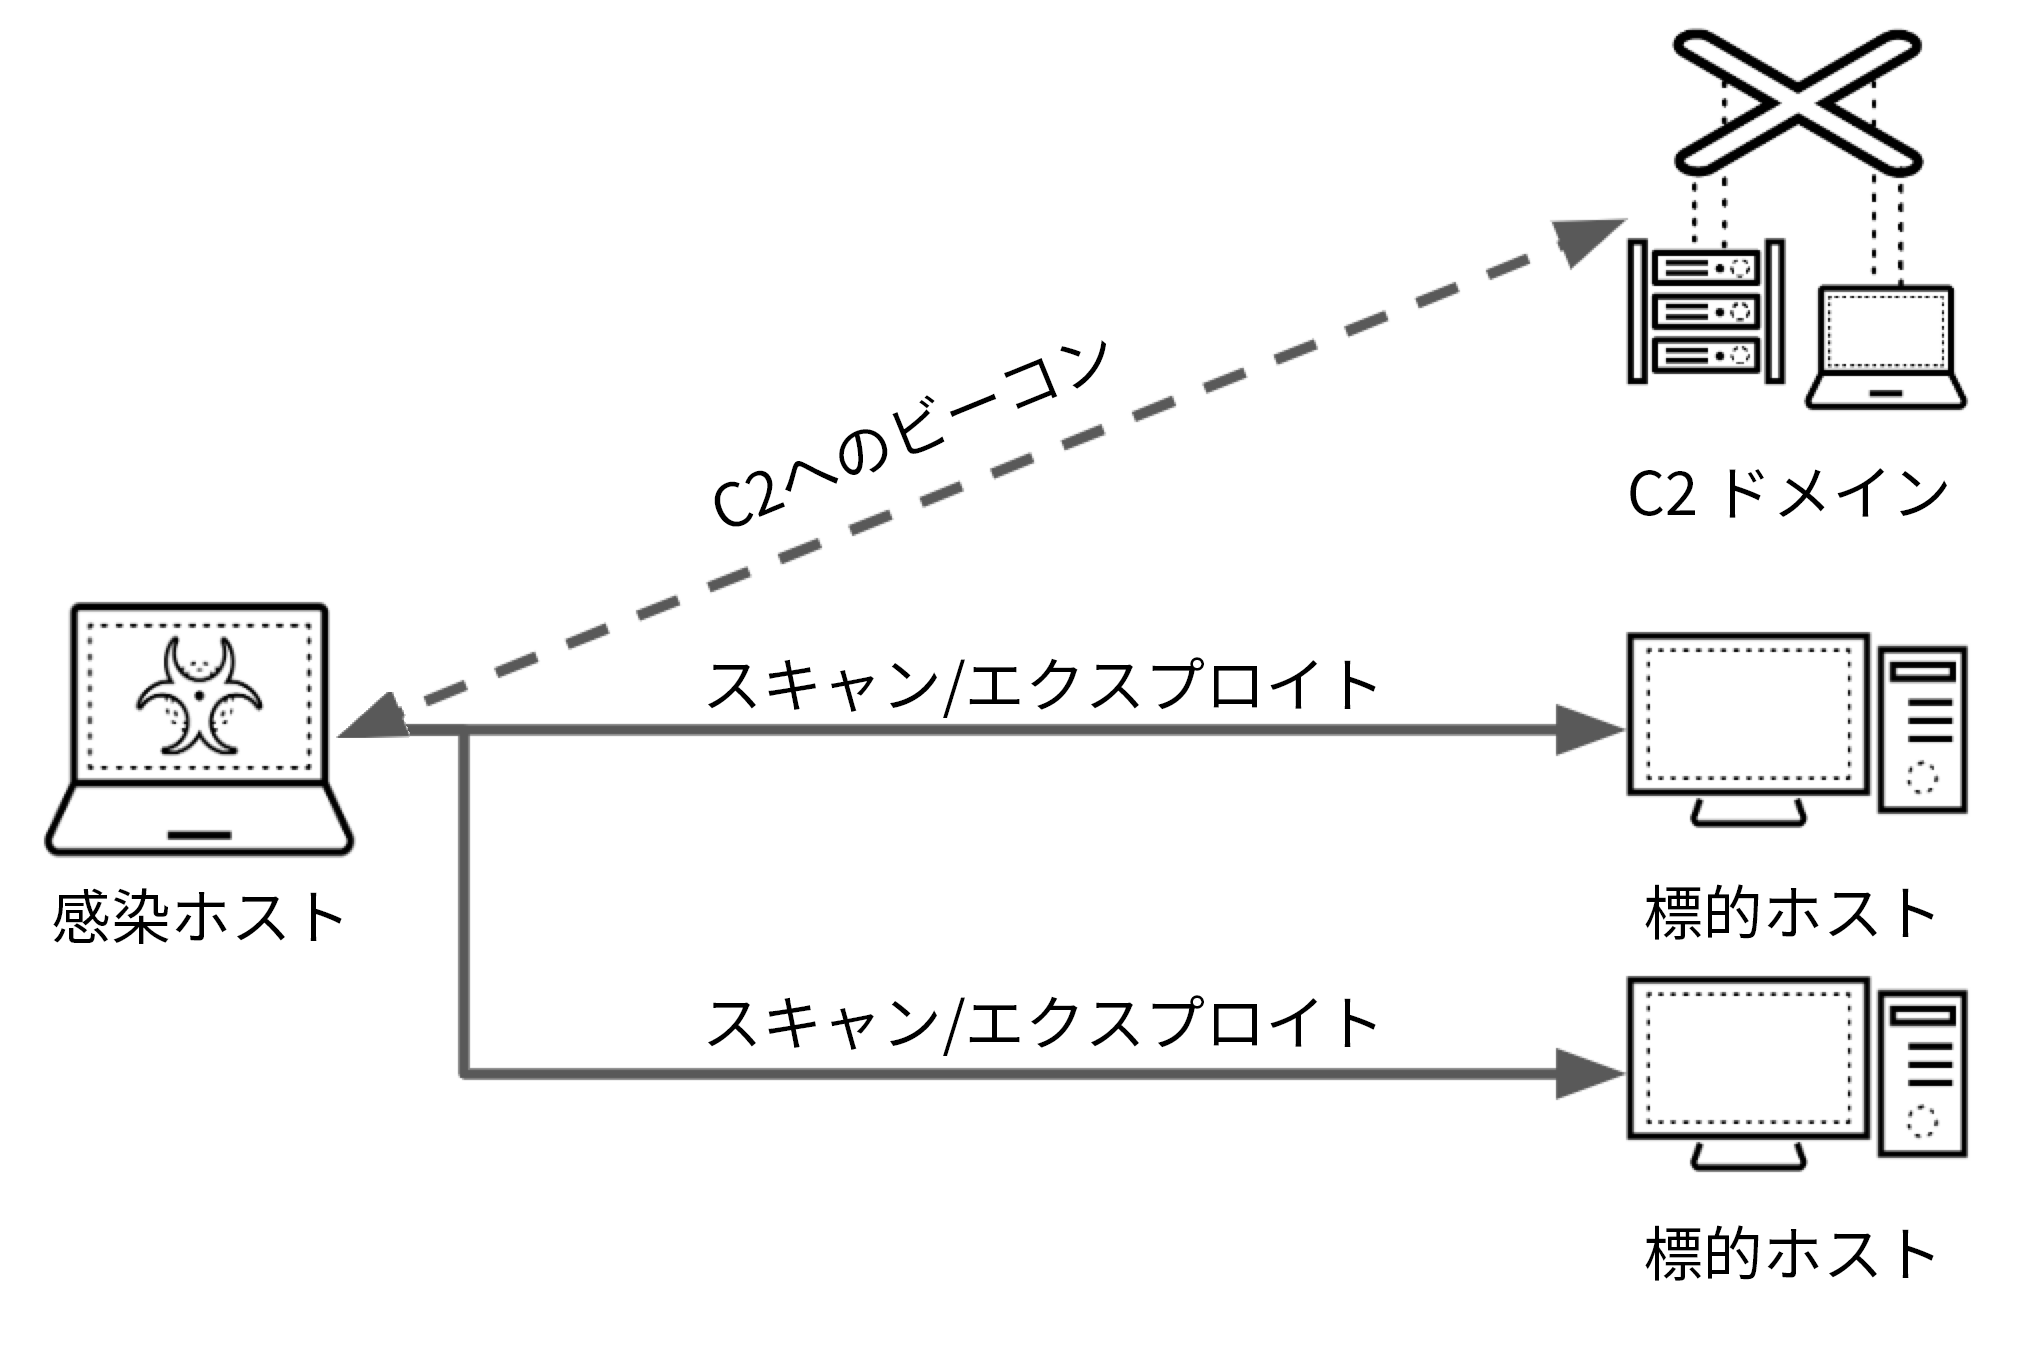 画像 2 はマルウェア駆動型スキャンを示す図です。感染ホストは、ターゲットのホスト 2 台をスキャンして悪用しています。コマンド & コントロール ドメインと感染ホストとの間ではビーコンが送受信されています。 